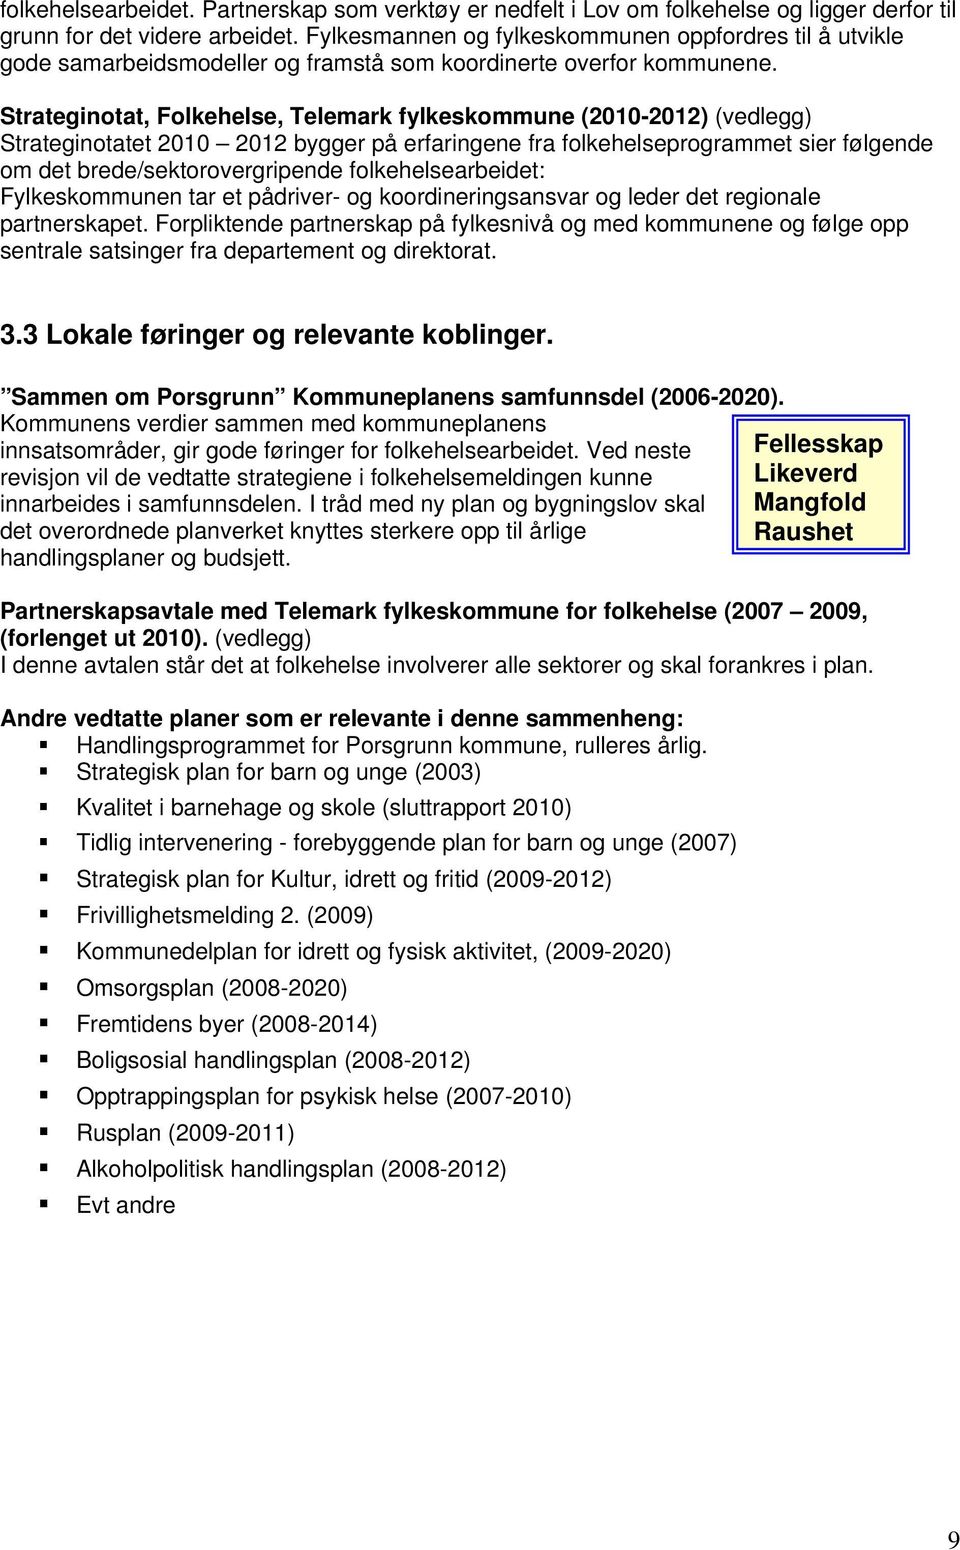 Strateginotat, Folkehelse, Telemark fylkeskommune (2010-2012) (vedlegg) Strateginotatet 2010 2012 bygger på erfaringene fra folkehelseprogrammet sier følgende om det brede/sektorovergripende